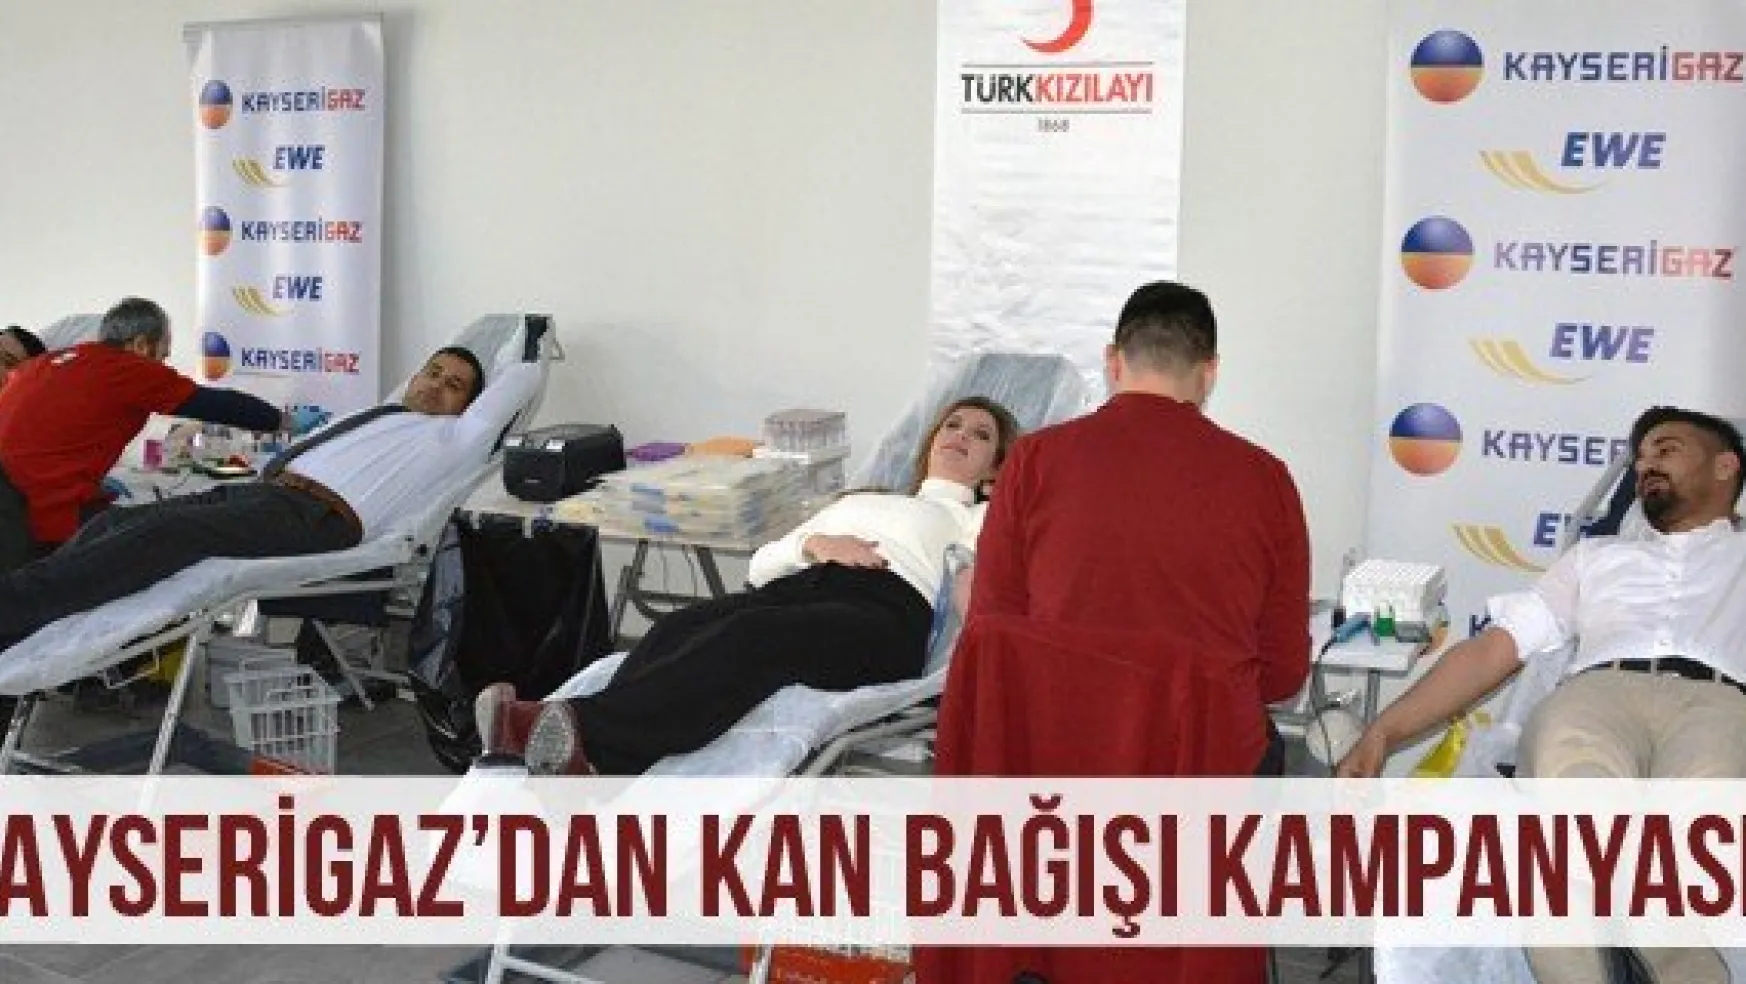 Kayserigaz'dan Kan Bağışı Kampanyası